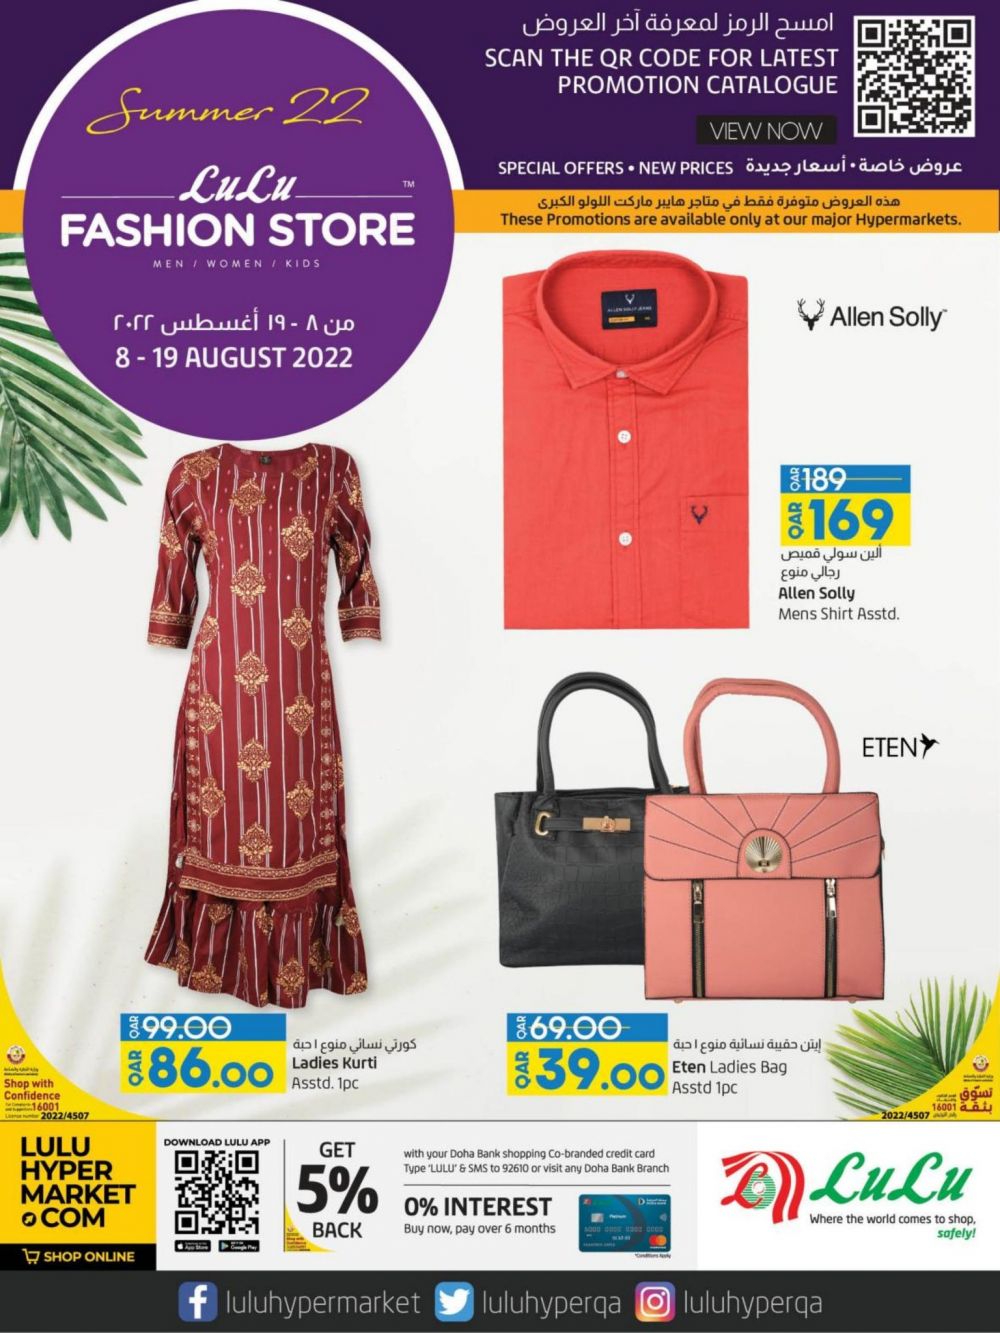 Half Pay Back LULU QATAR Offers - 6742, Clothing & Fashion